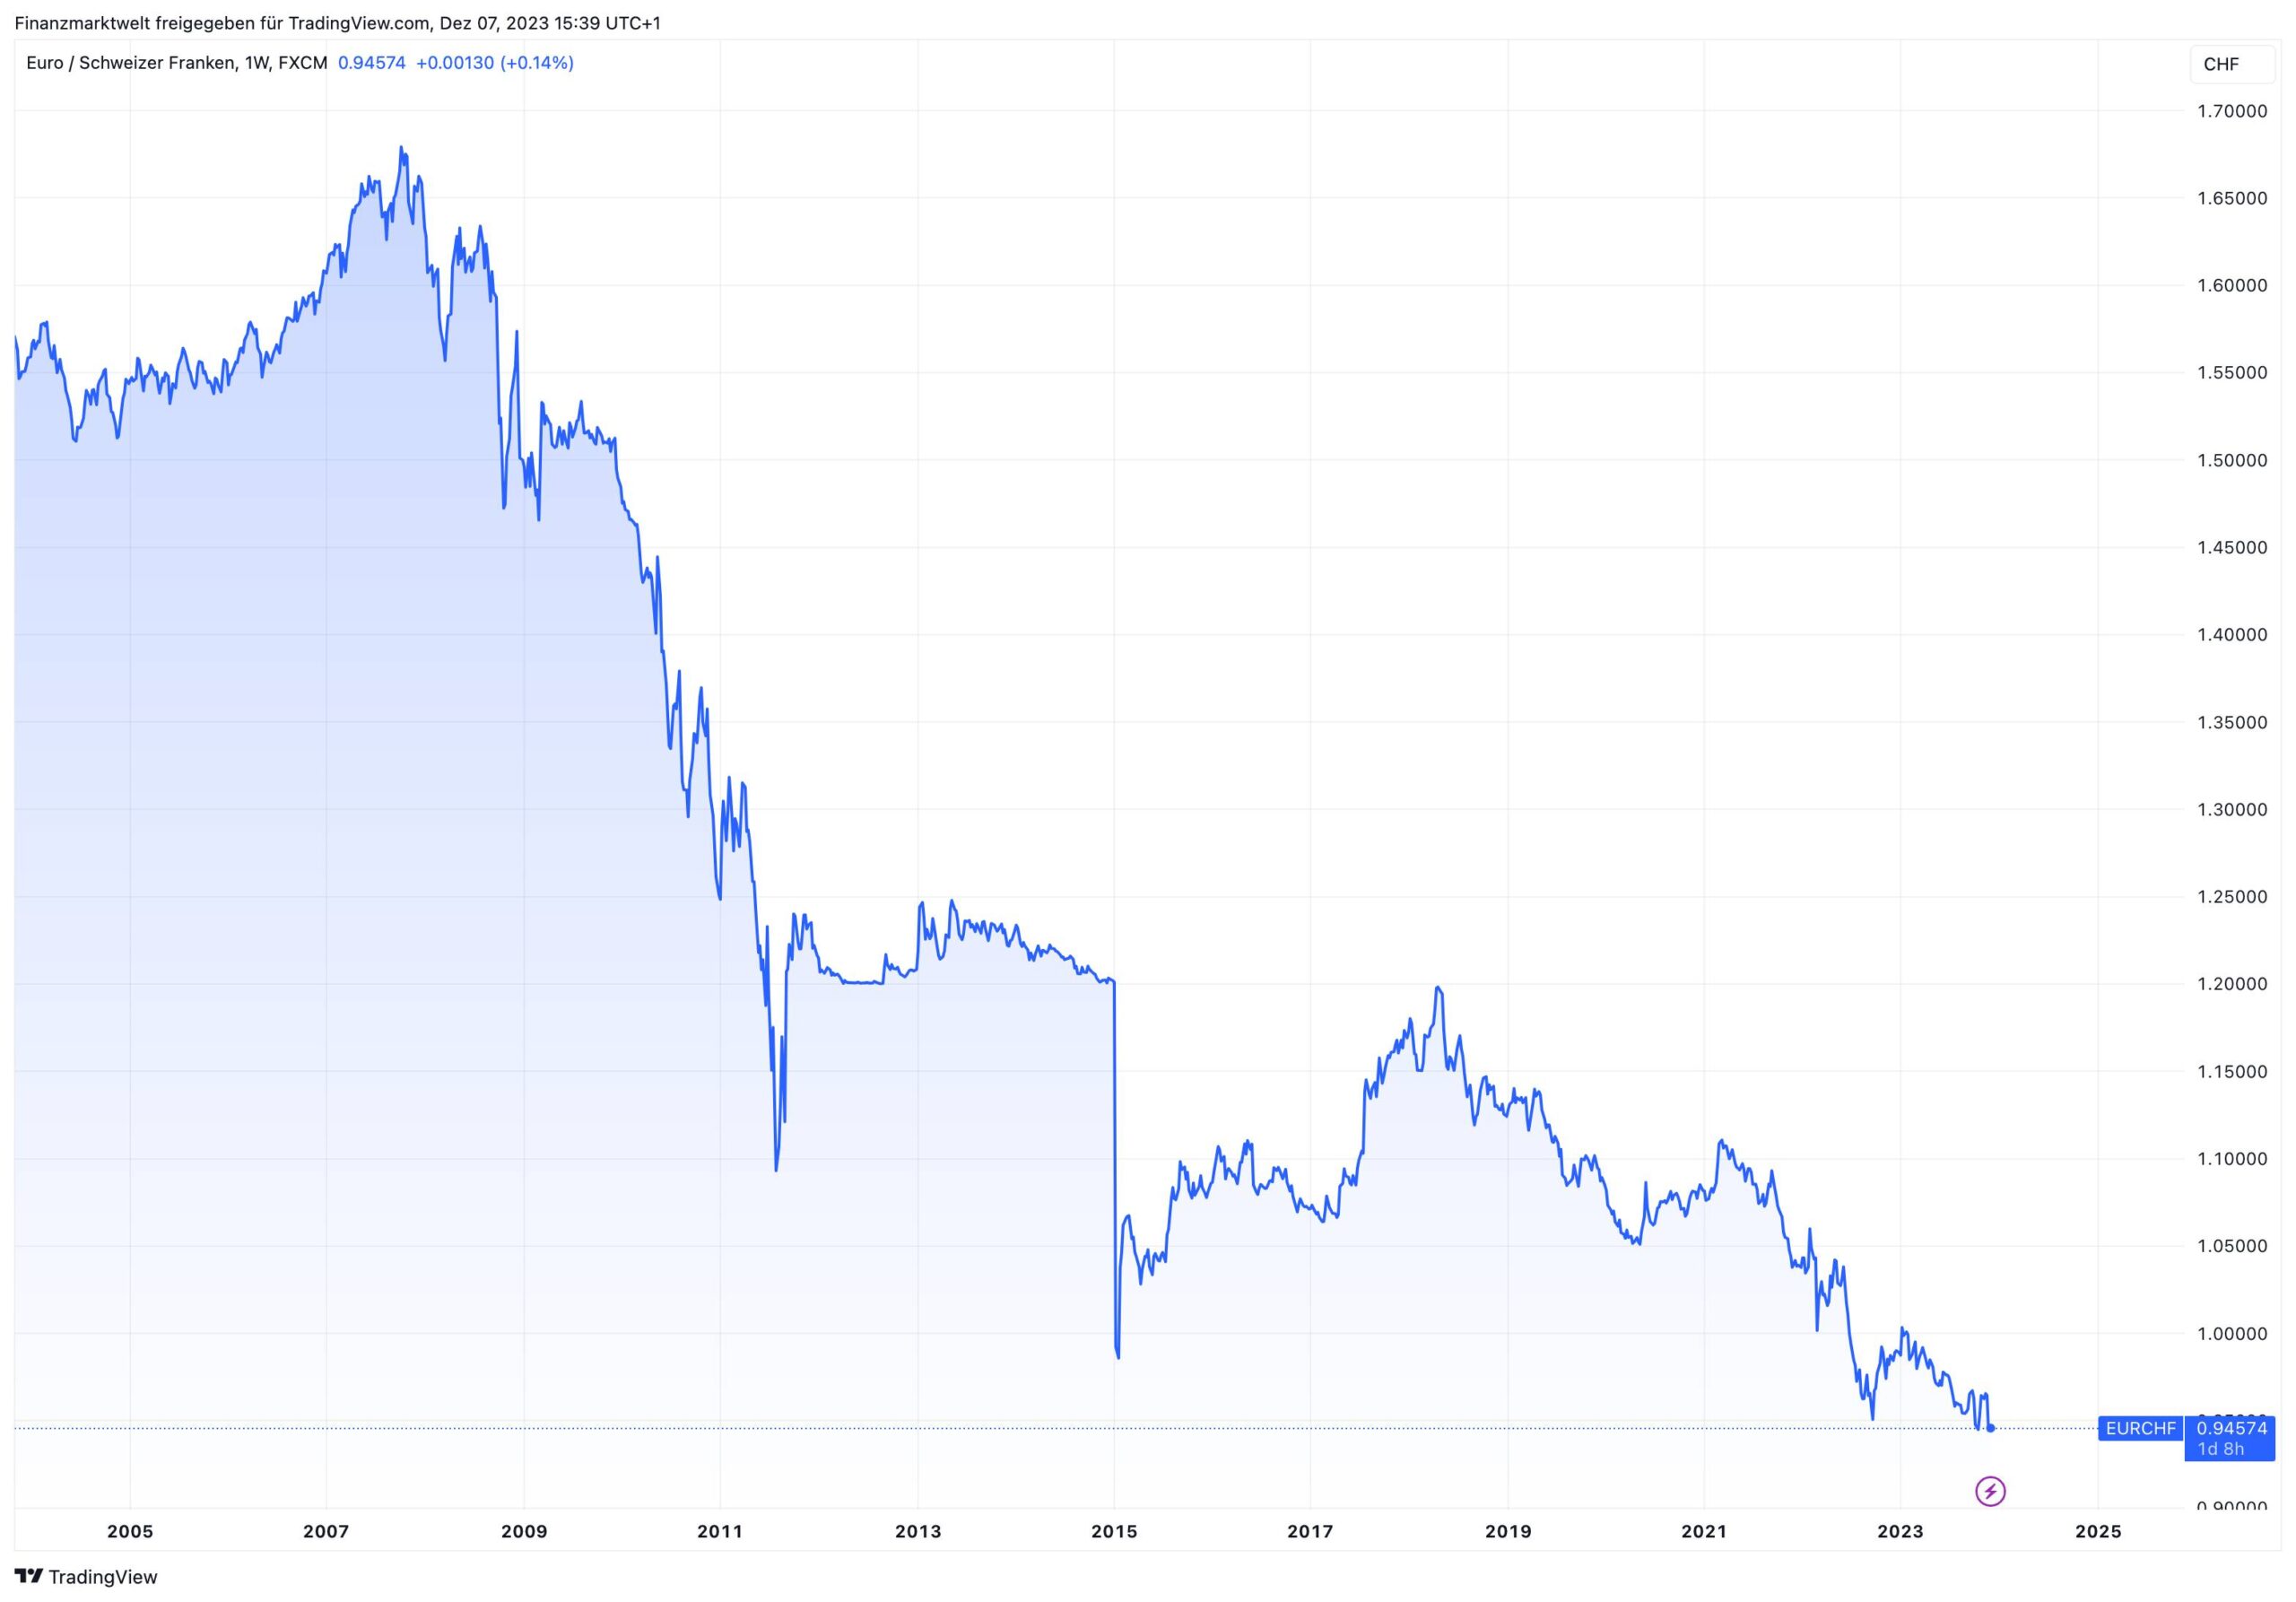 Grafik zeigt Kursverlauf von Euro gegen Schweizer Franken seit dem Jahr 2004